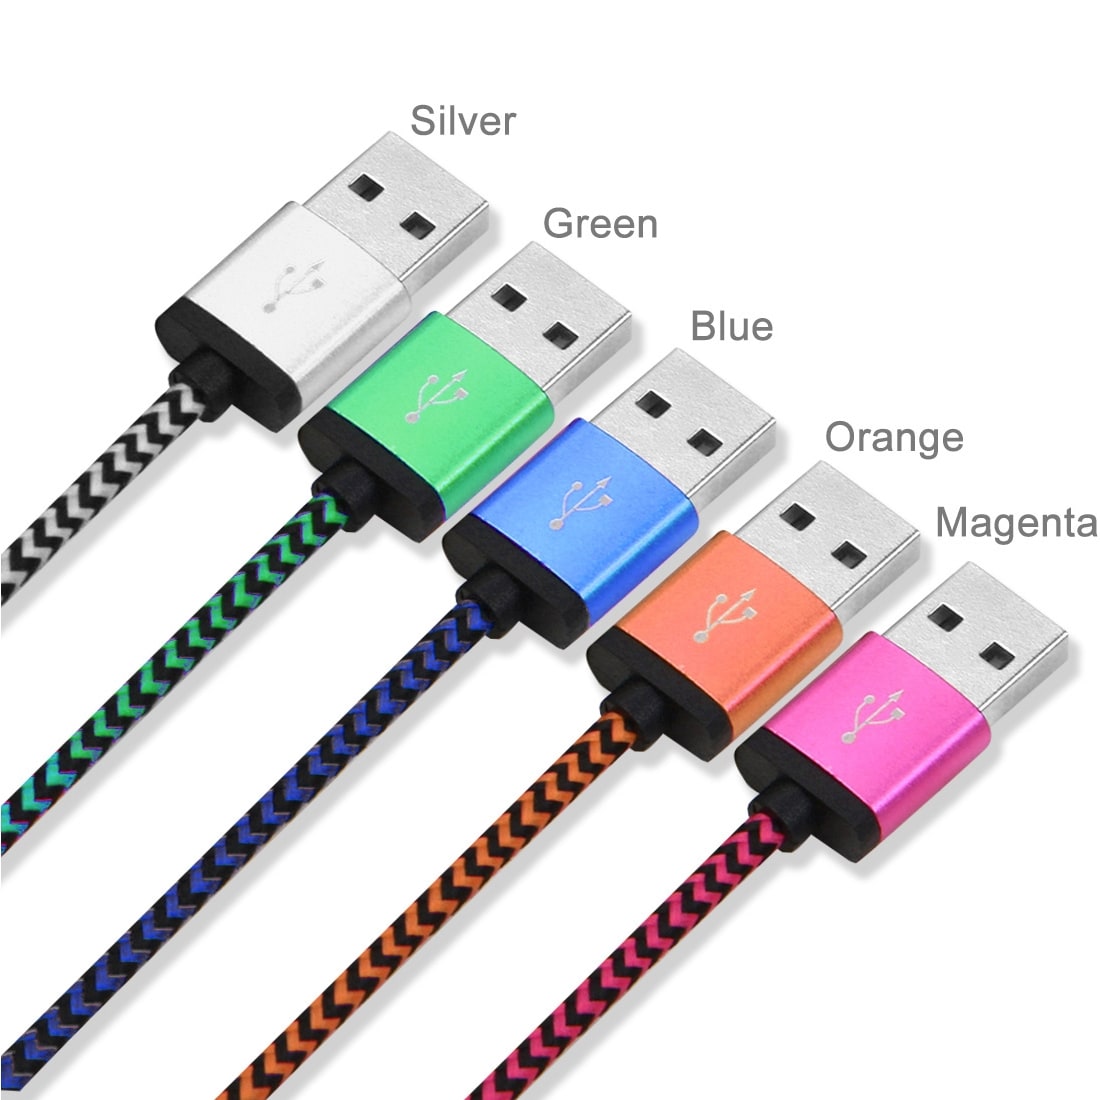 Usb-kabel USB type C med metalhoved - Storpak 5 stk. i farver - Køb på 24hshop.dk